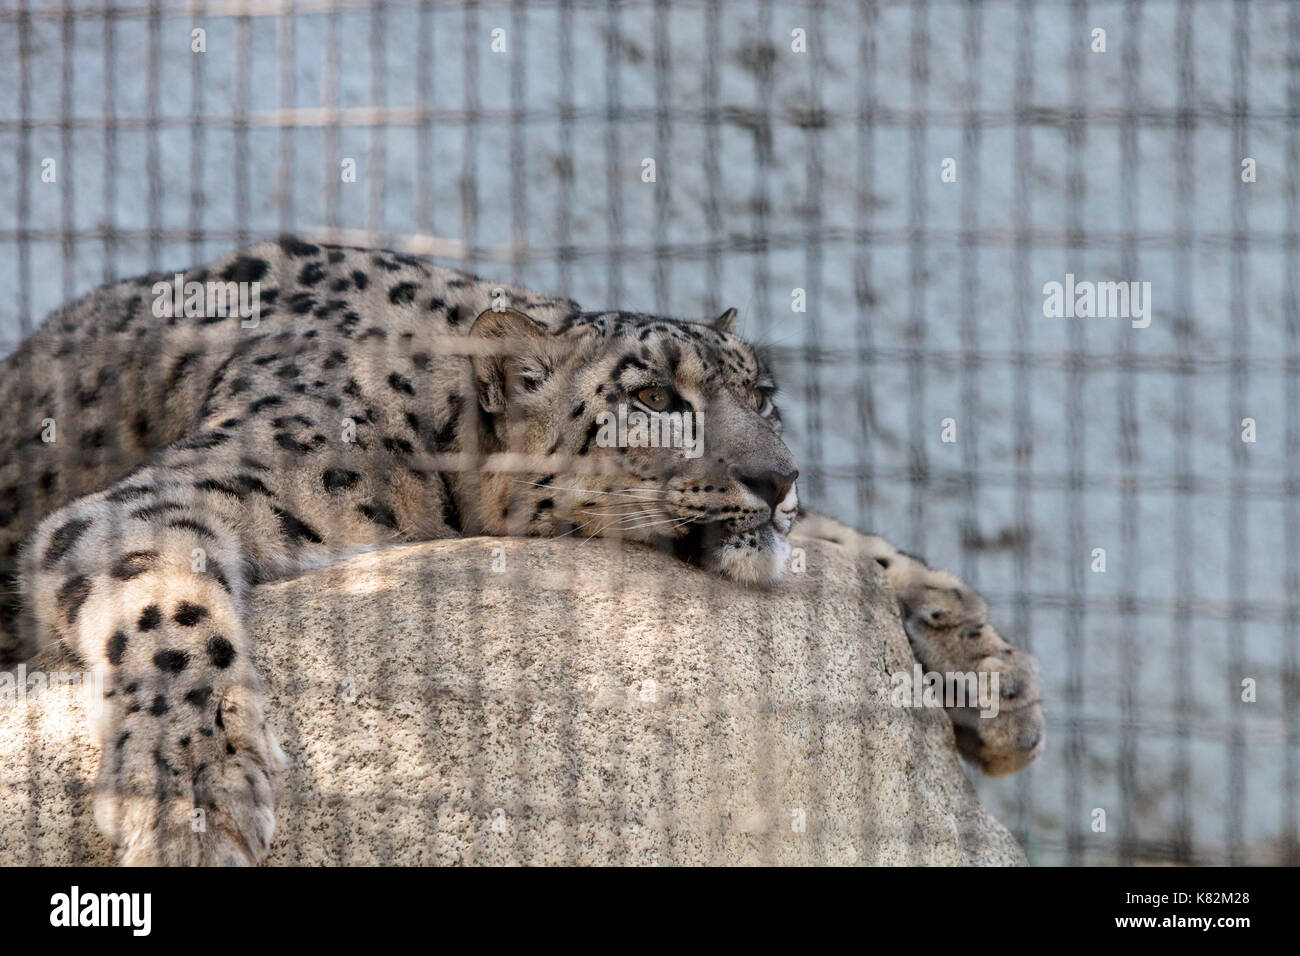 Snow Leopard Panthera uncia in die Bergkette von China, Nepal und Indien gefunden. Stockfoto